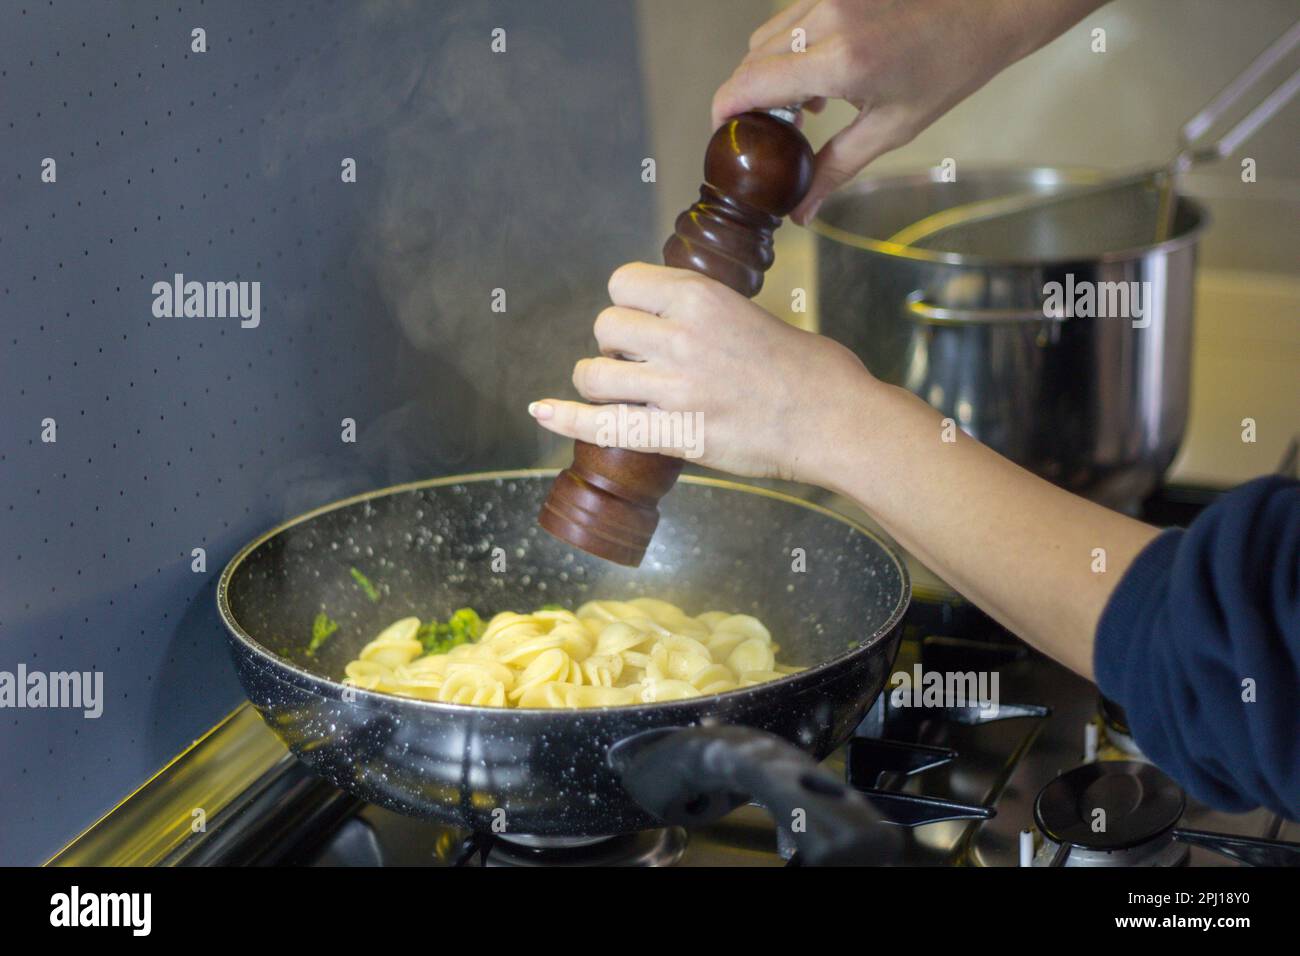 Image des mains d'une femme assaisonnant des pâtes fraîchement cuites dans une casserole avec un moulin à poivre. Tradition culinaire italienne. Banque D'Images